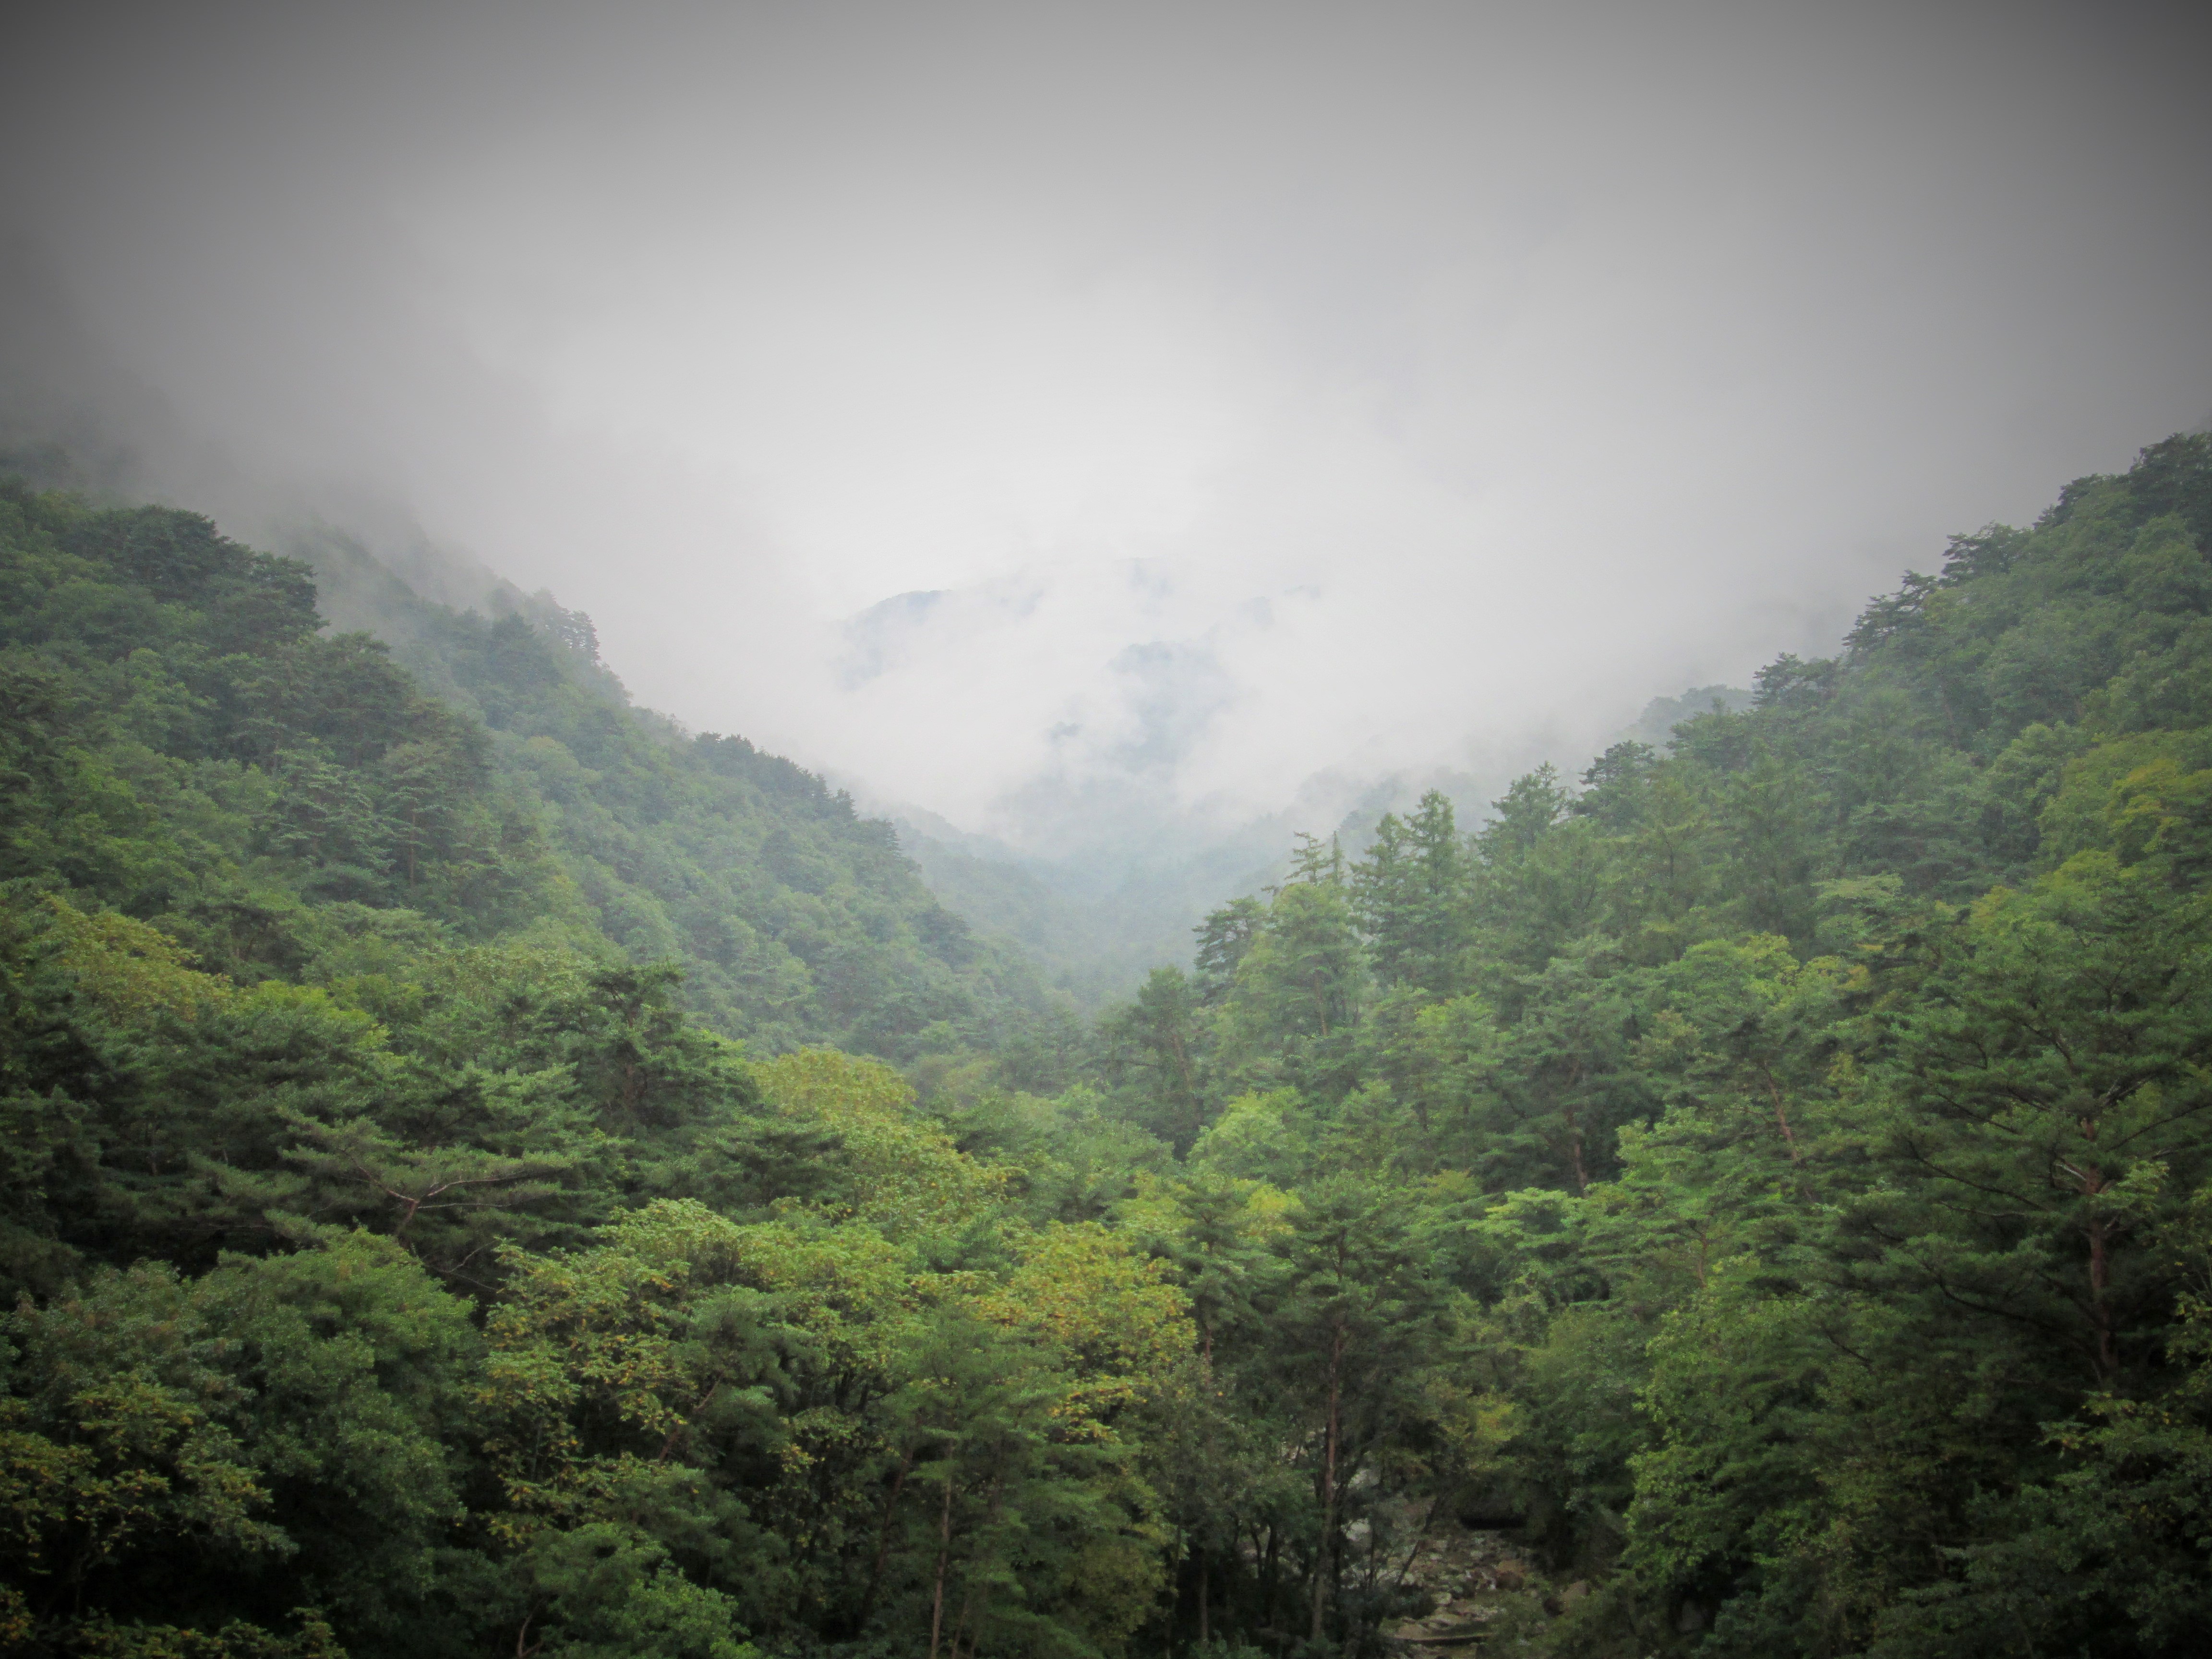 Blick auf Nebel der durch eine Berglandschaft zieht. Es ist der Terassenausblick.